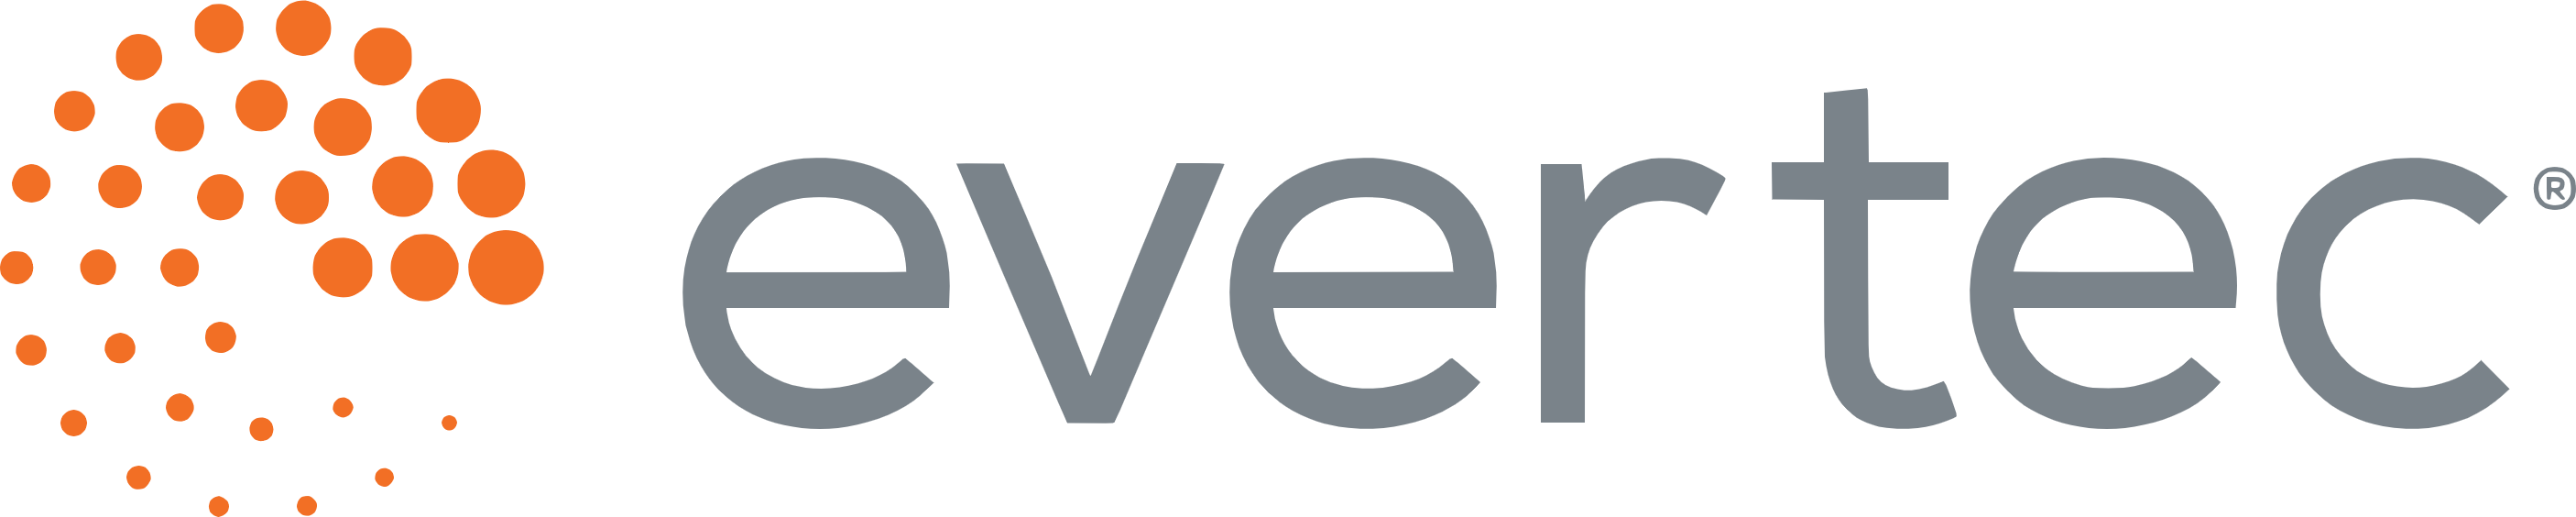 Evertec logo large (transparent PNG)